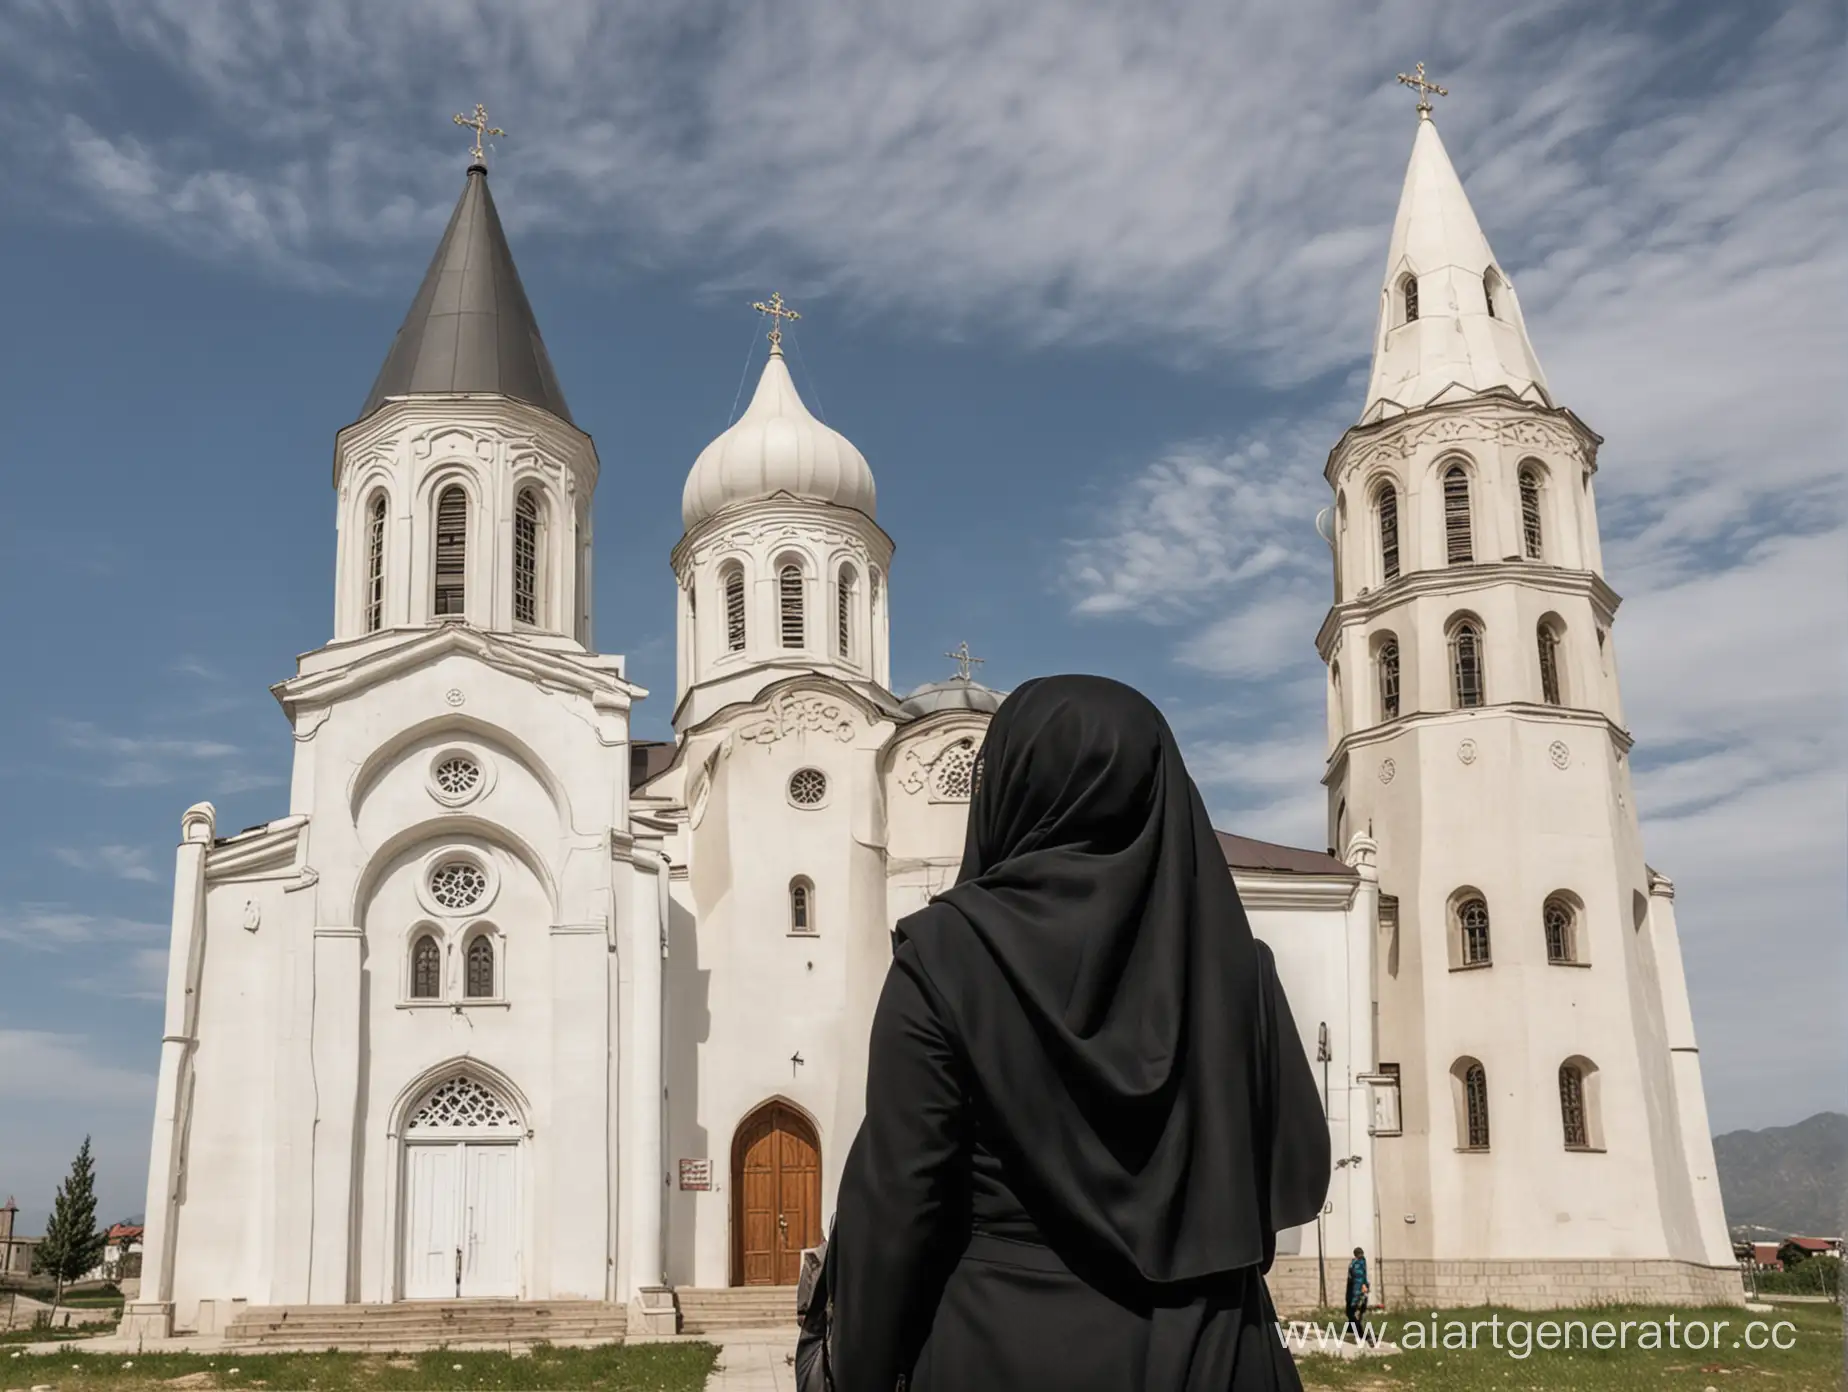 Христианка в хиджабе стоит лицом к белой православной церкви в Осетии